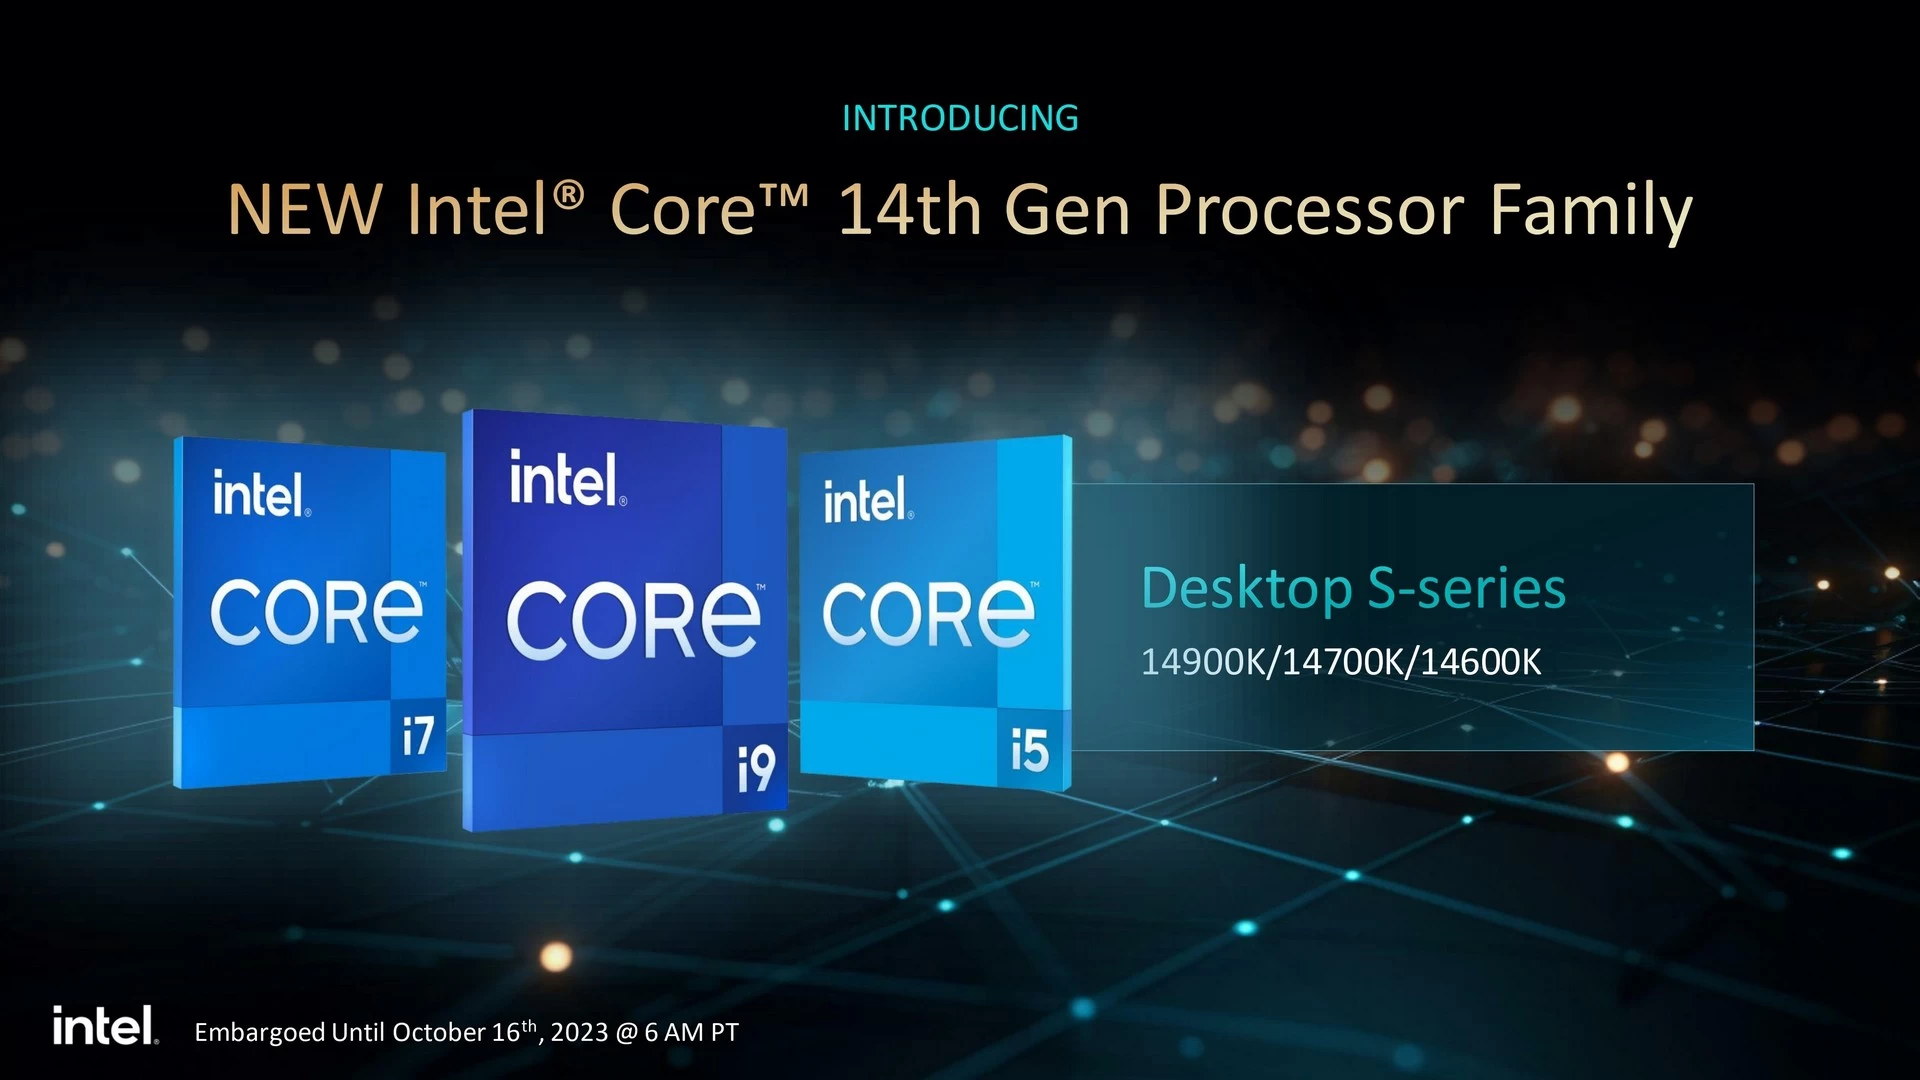 صورة شركة Intel تُعلن عن معالجات الجيل الرابع عشر 14th Gen المكتبية